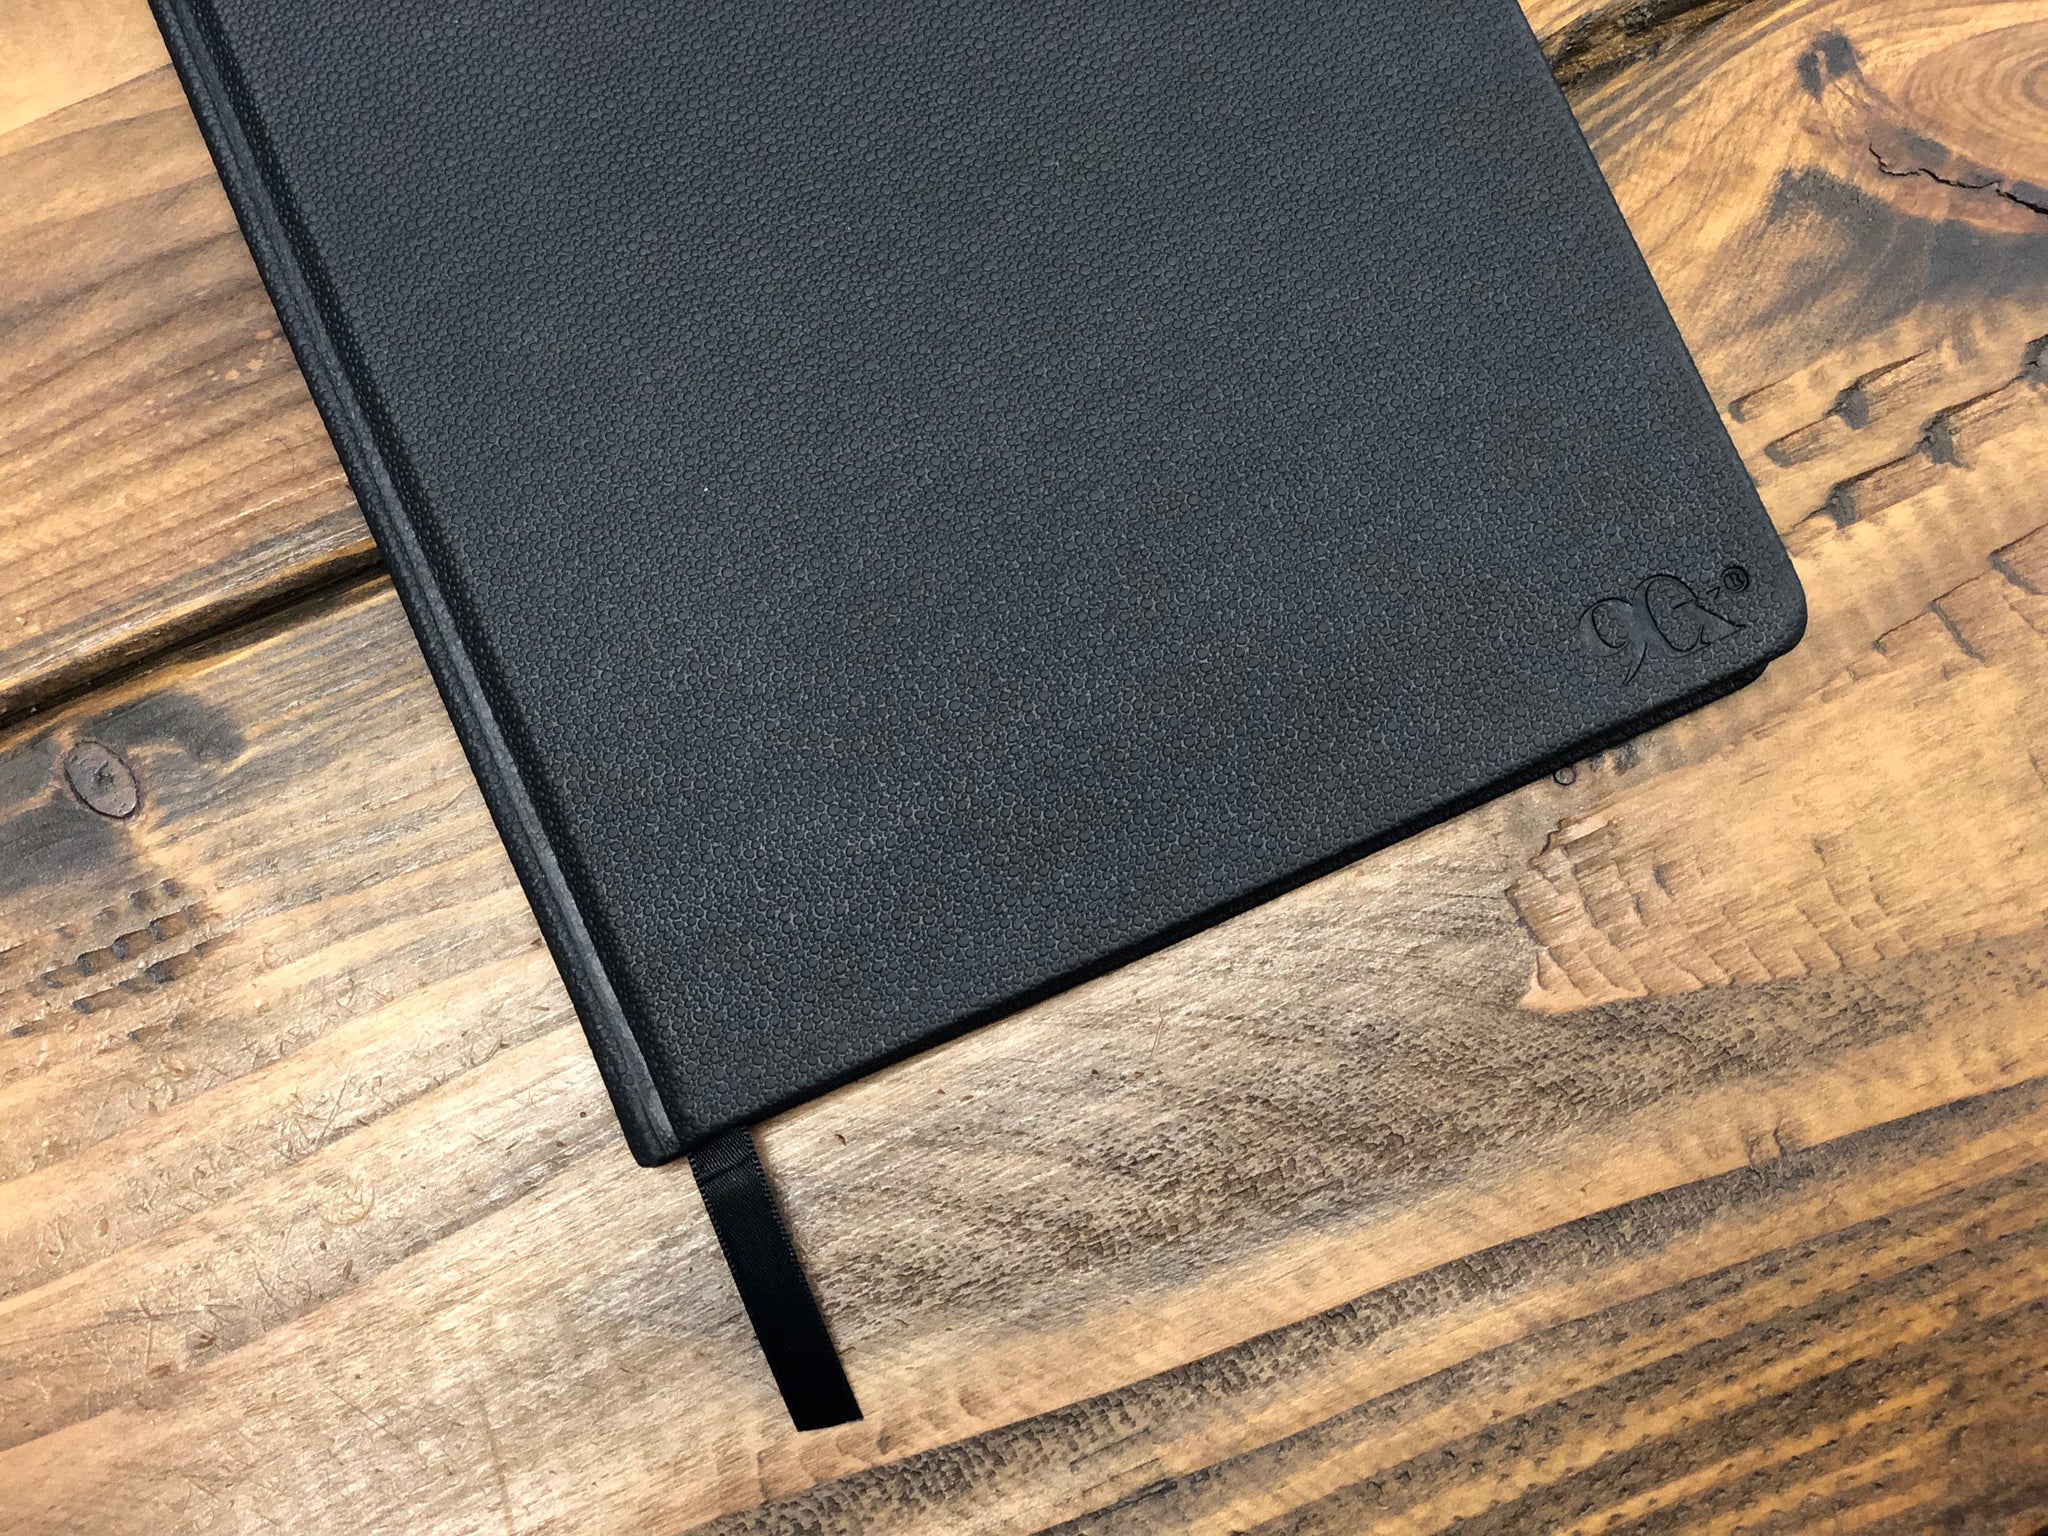 Wholesale & Bulk Order for ShakED Notebooks